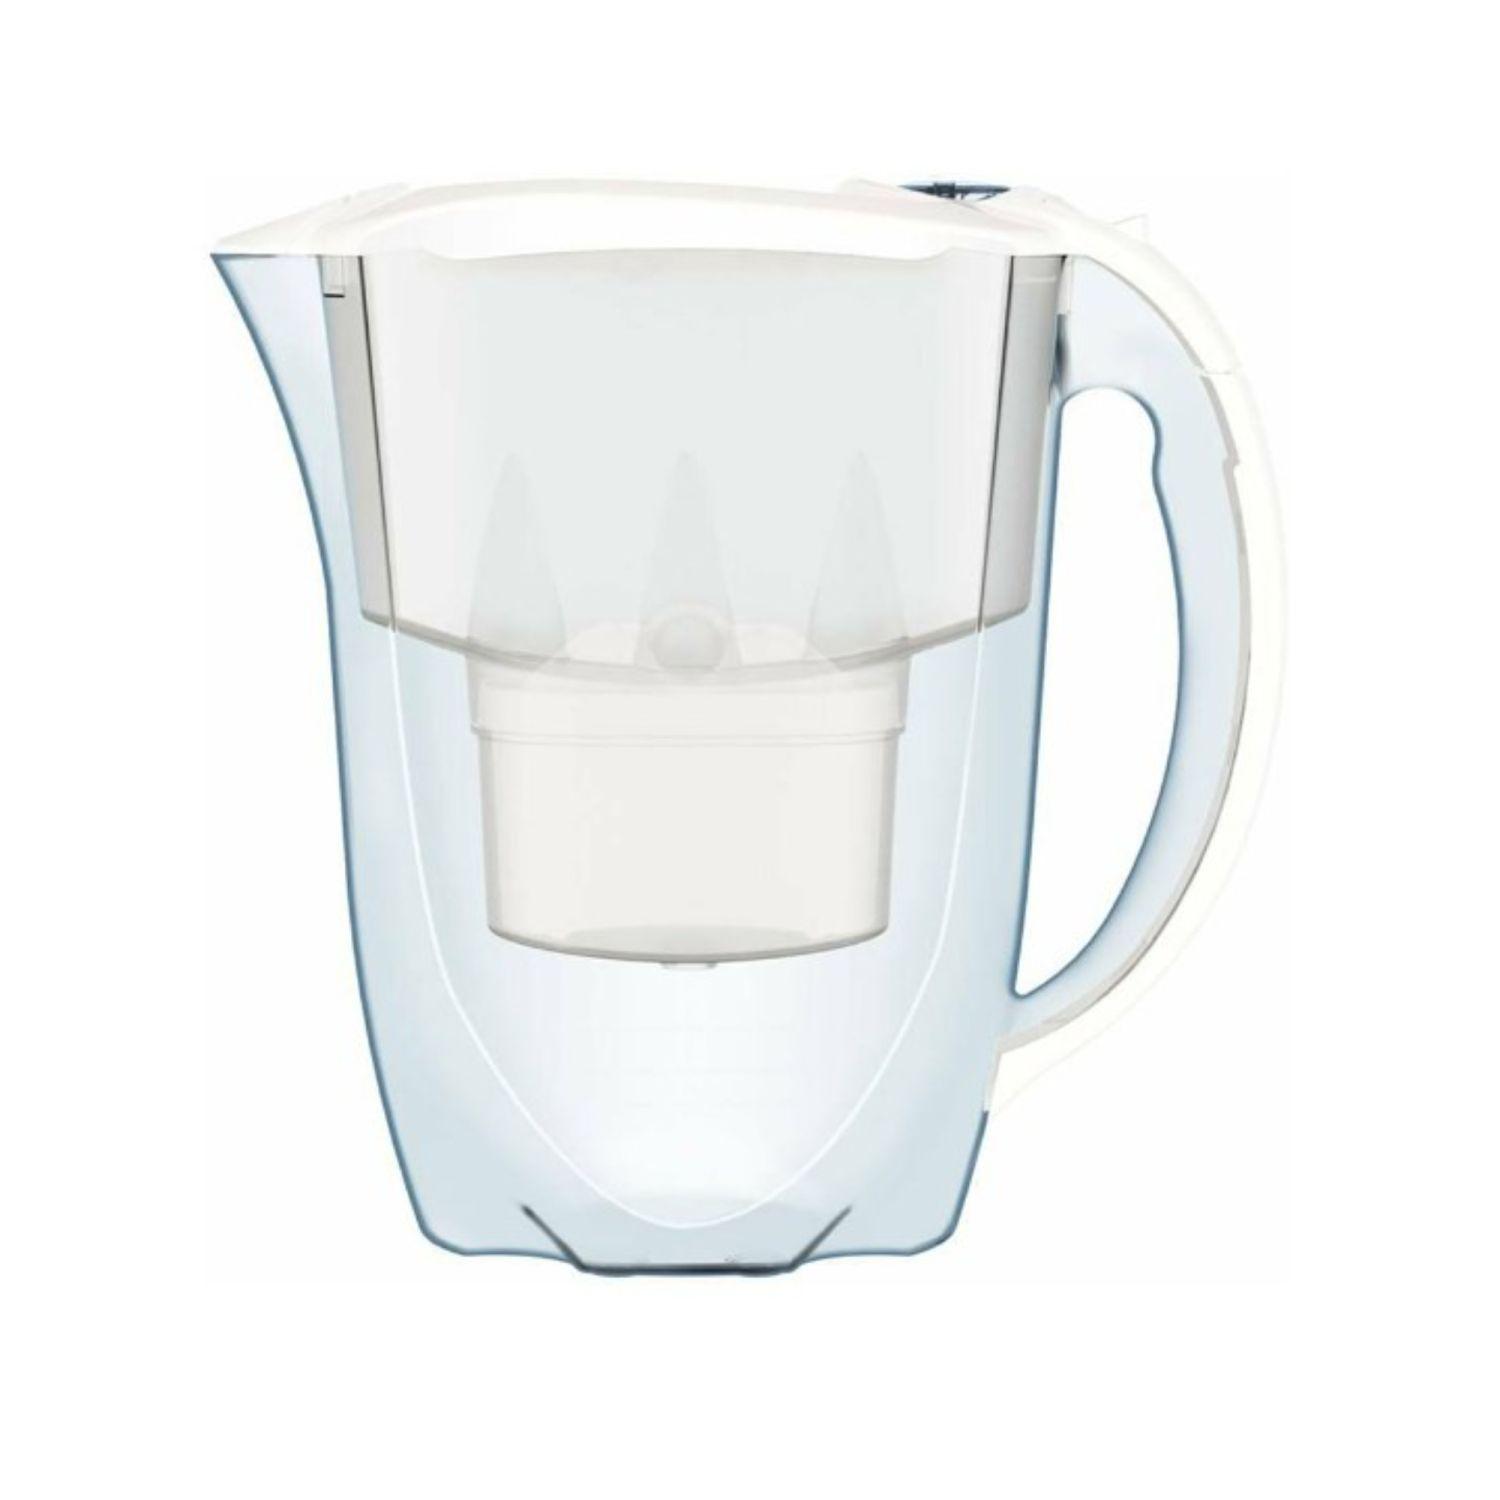 Selected image for AQUAPHOR Bokal za filtriranje vode IZVOR beli